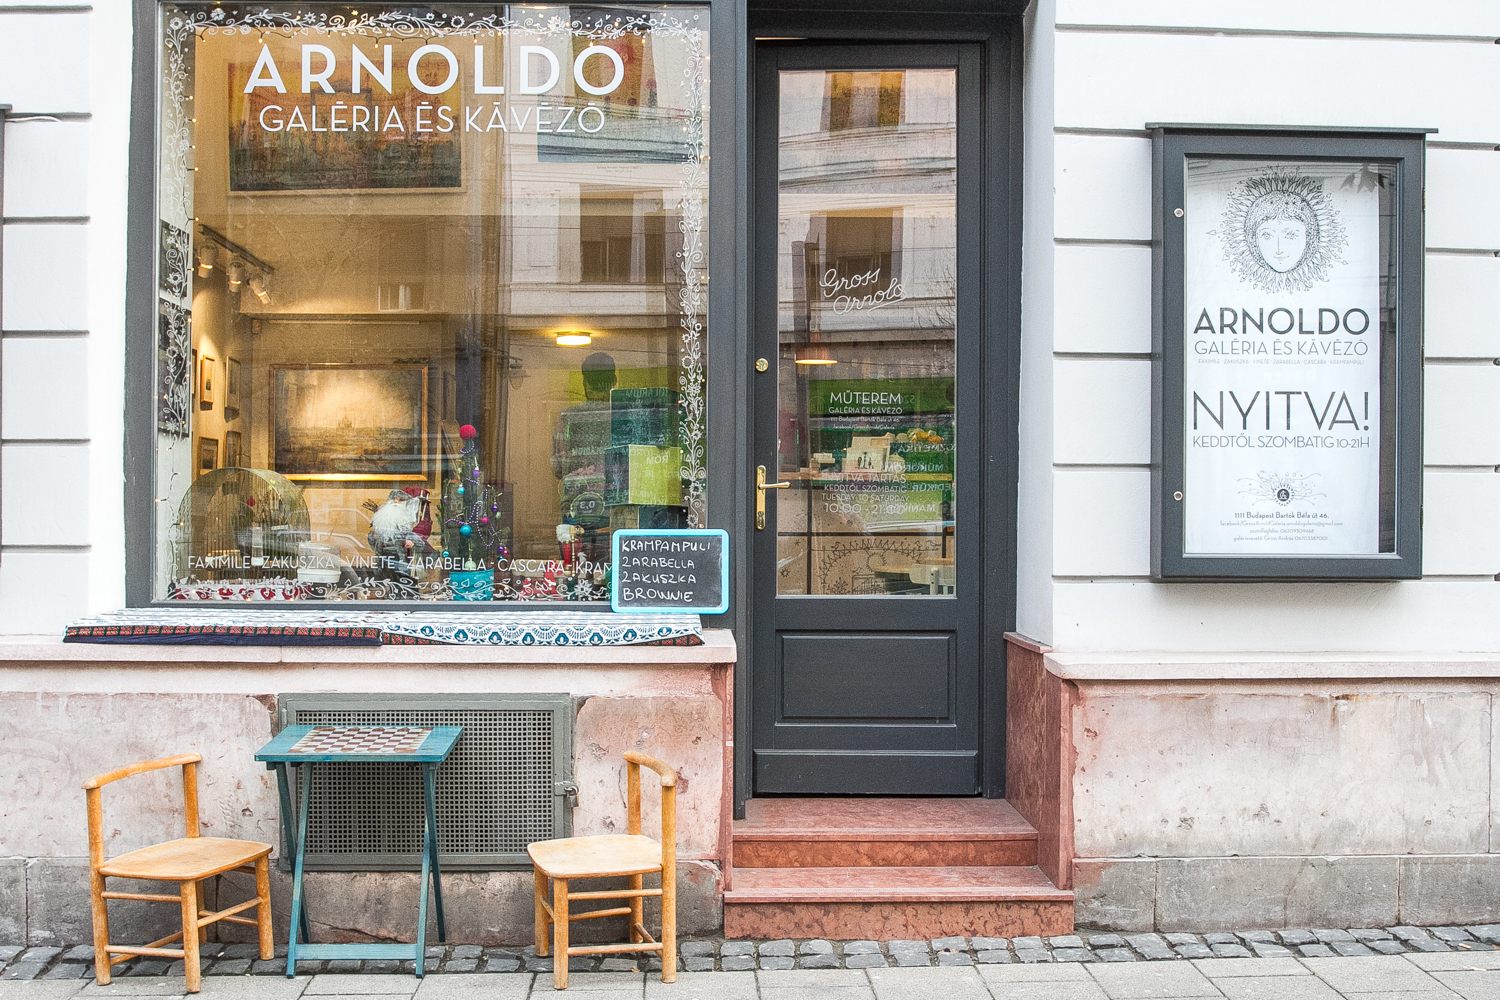 Arnoldo - egy rokonszenves galéria és kávézó a Bartókon